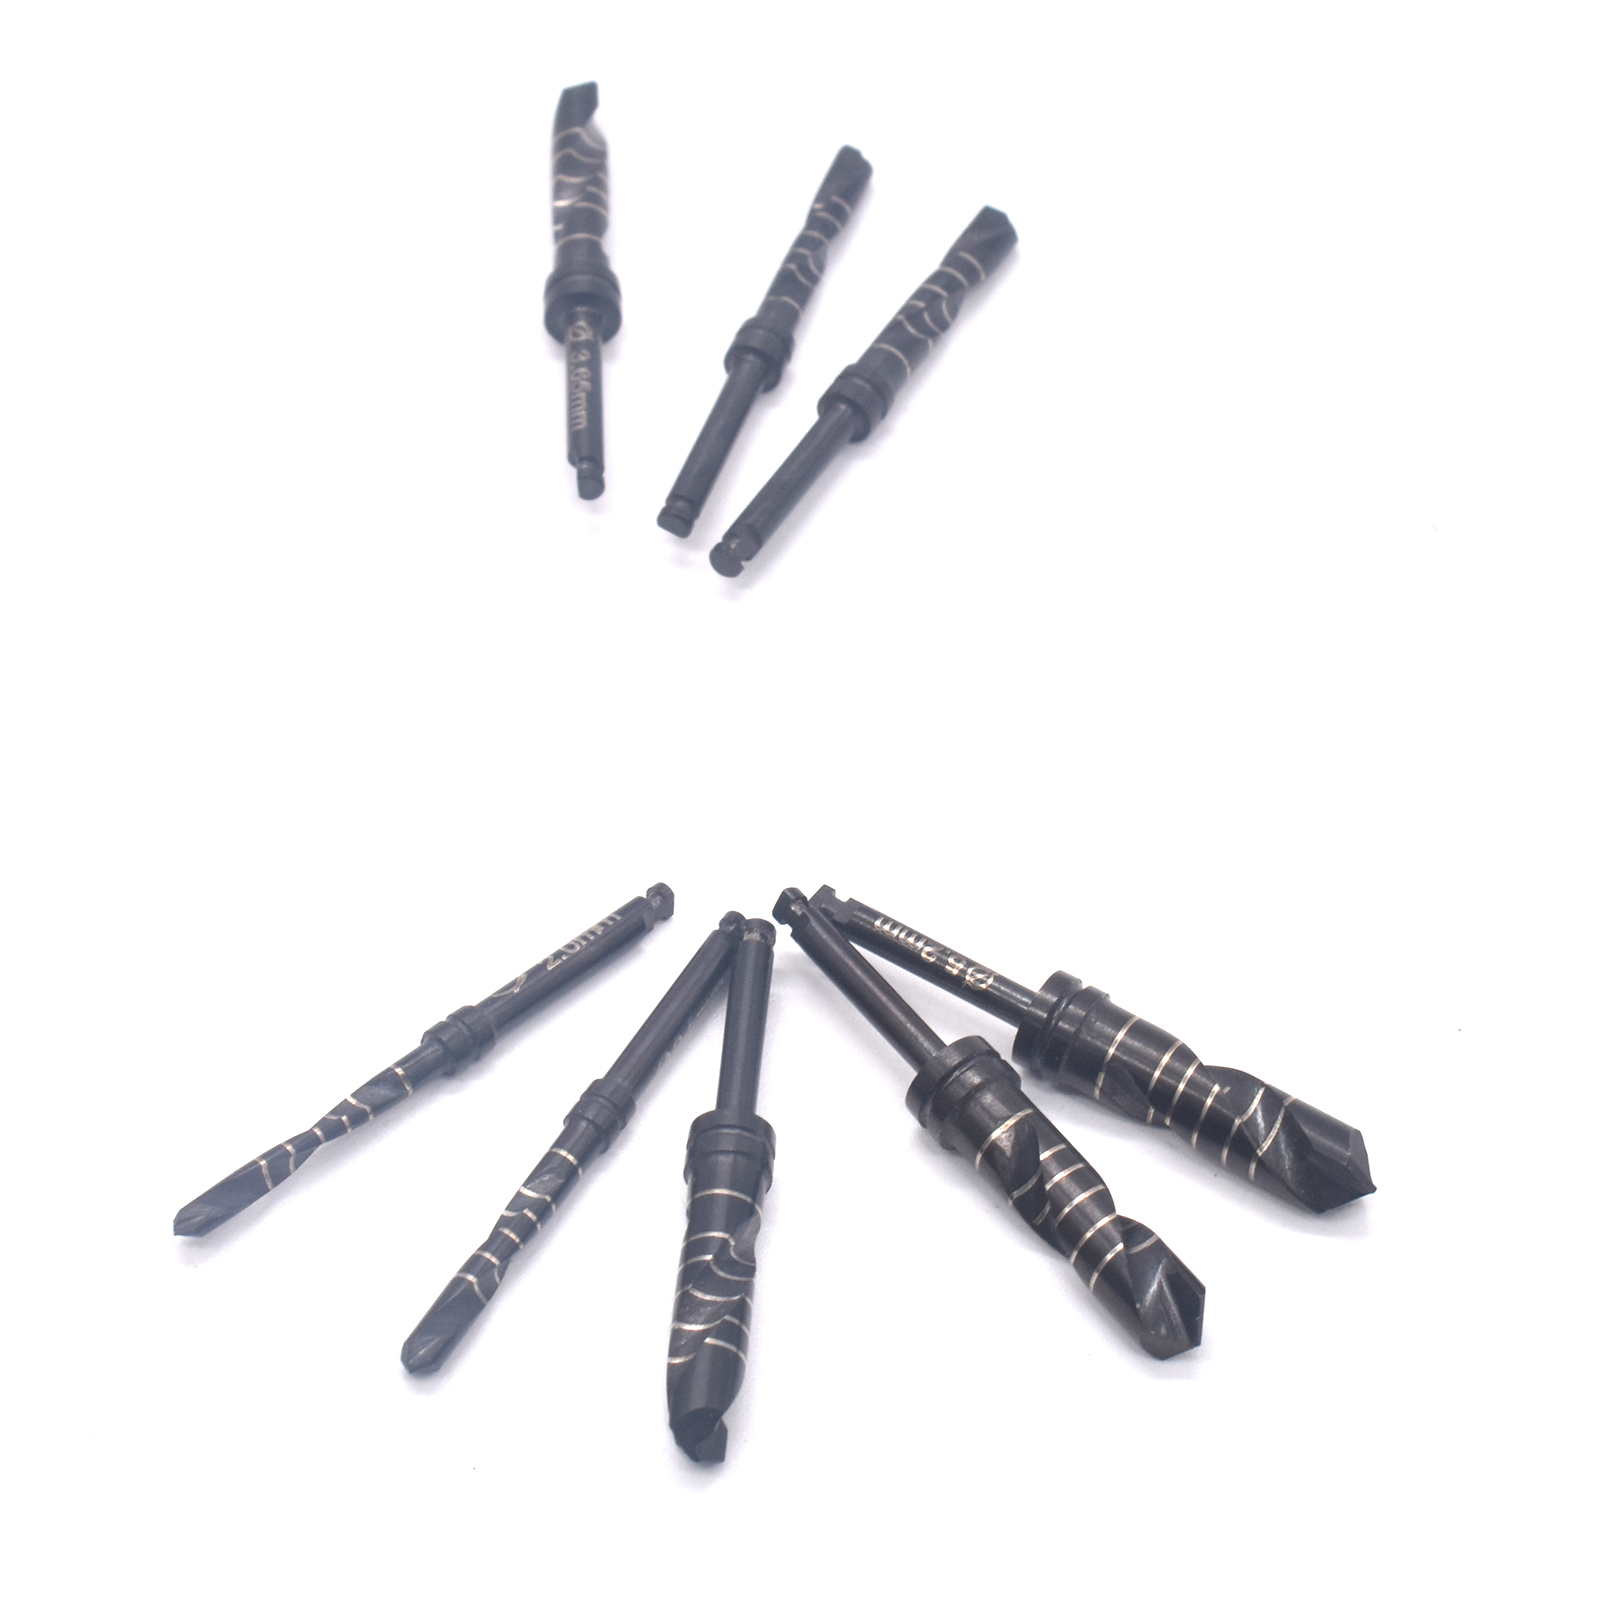 Dental Implant Drills Titanium Coated Black Reaming Drill Surgical Tools 2.0mm/2.5mm/2.8mm/3.2mm/3.65mm/4.2mm/4.8mm/5.2mm